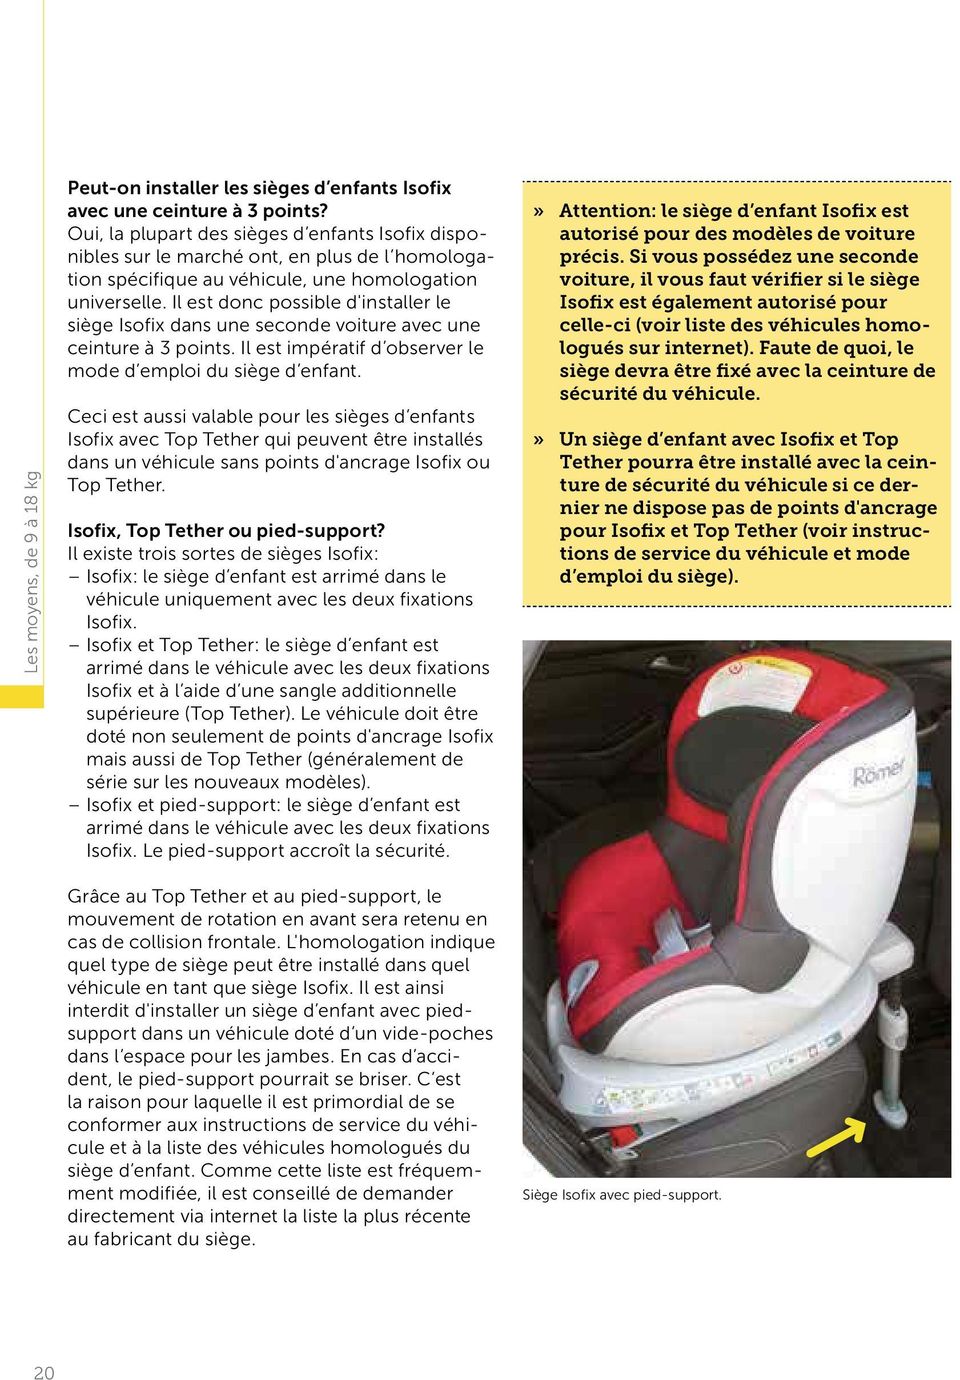 Il est donc possible d'installer le siège Isofix dans une seconde voiture avec une ceinture à 3 points. Il est impératif d observer le mode d emploi du siège d enfant.